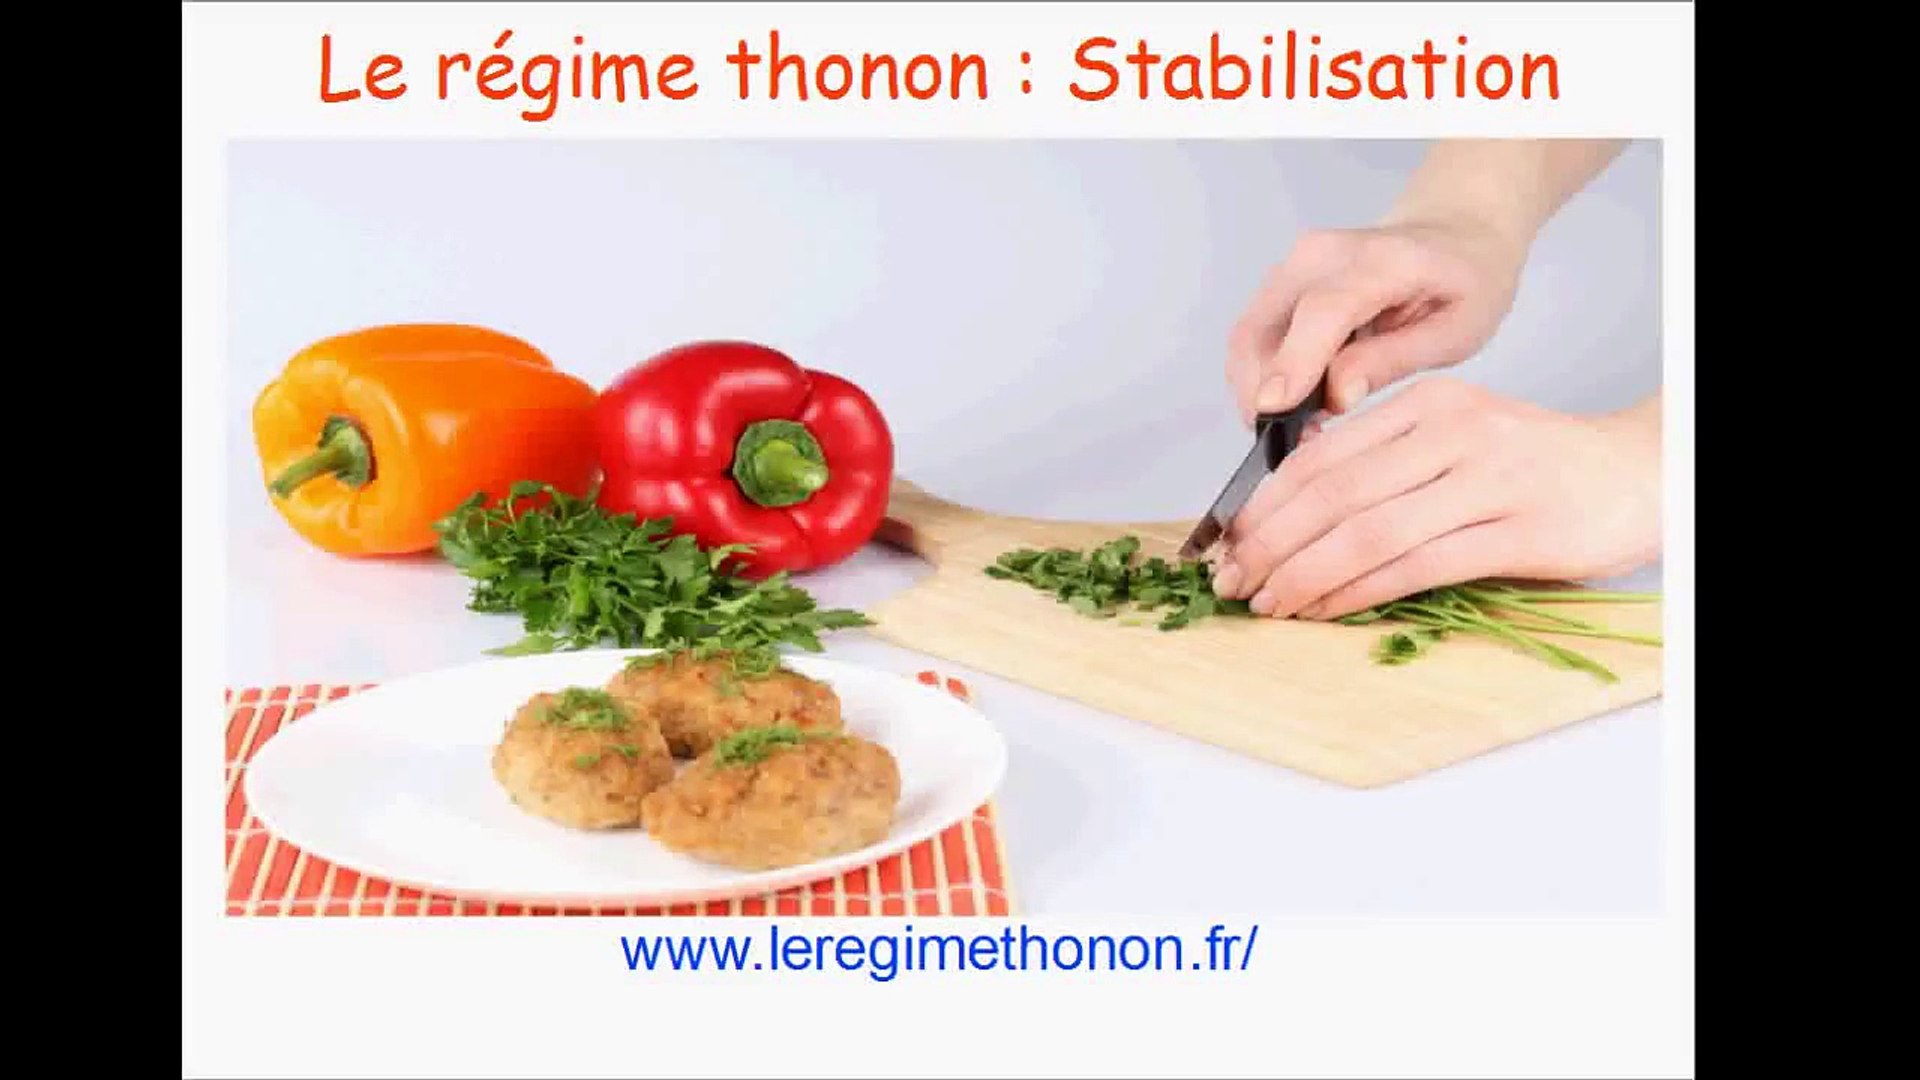 Regime thonon - Stabilisation - Vidéo Dailymotion